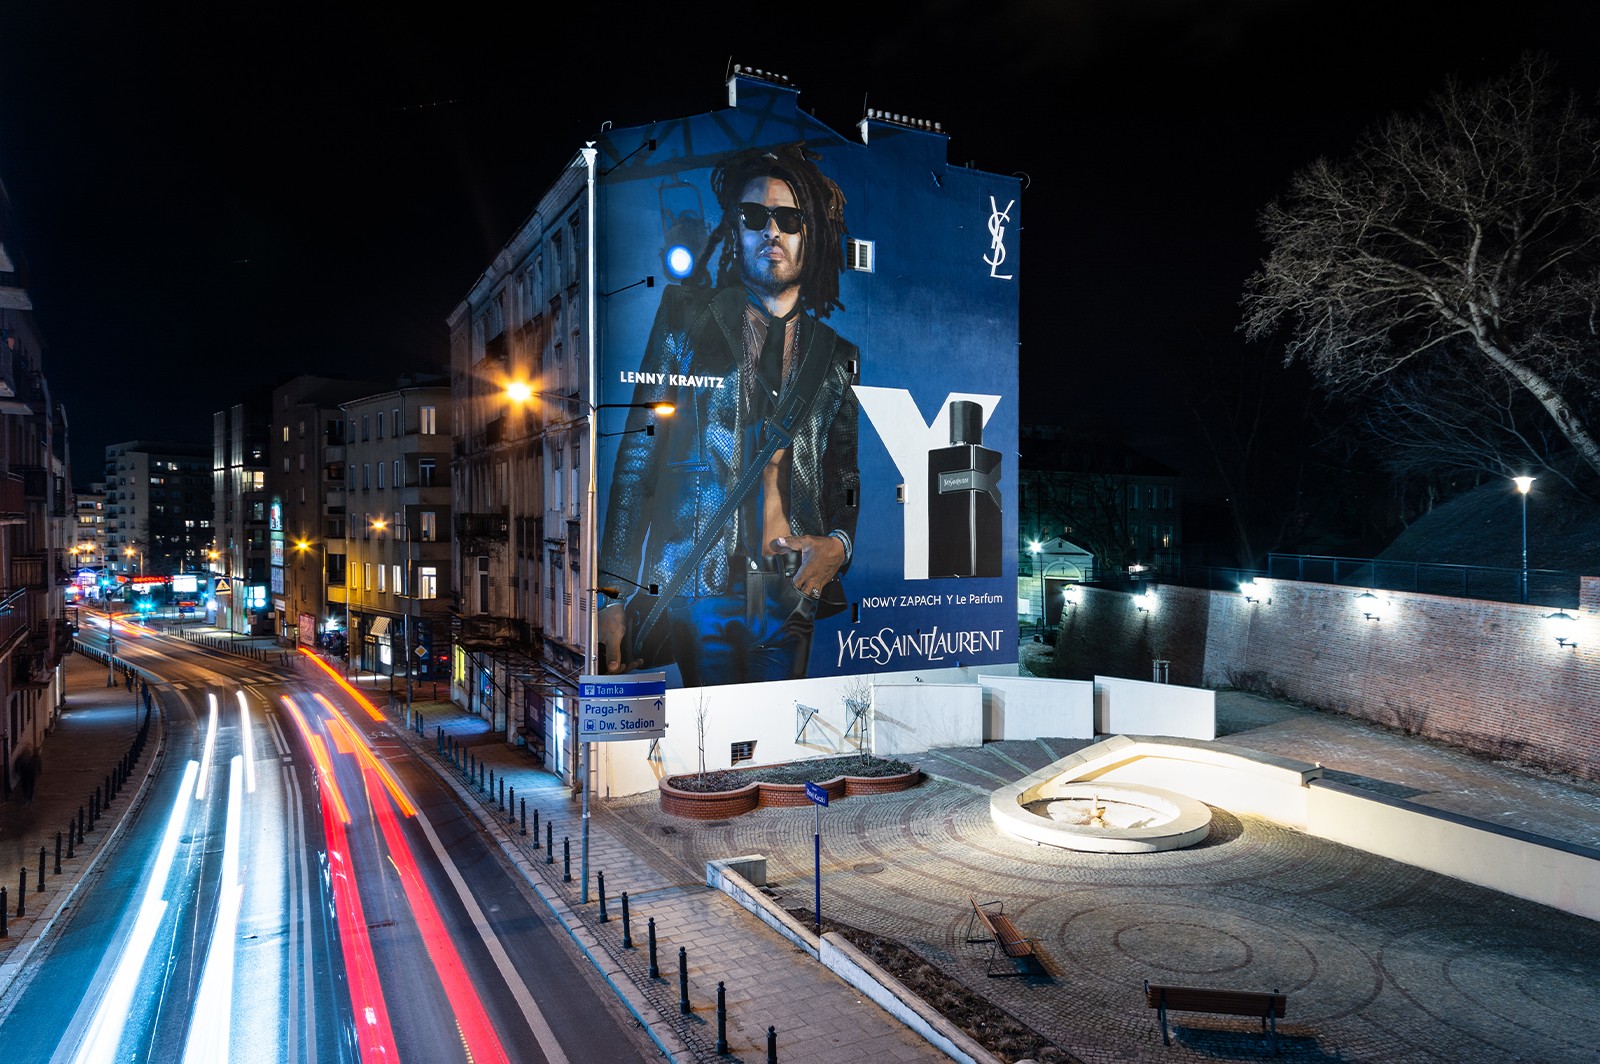 Mural reklamowy dla marki Yves Saint Laurent w Warszawie | Lenny Kravitz | Portfolio